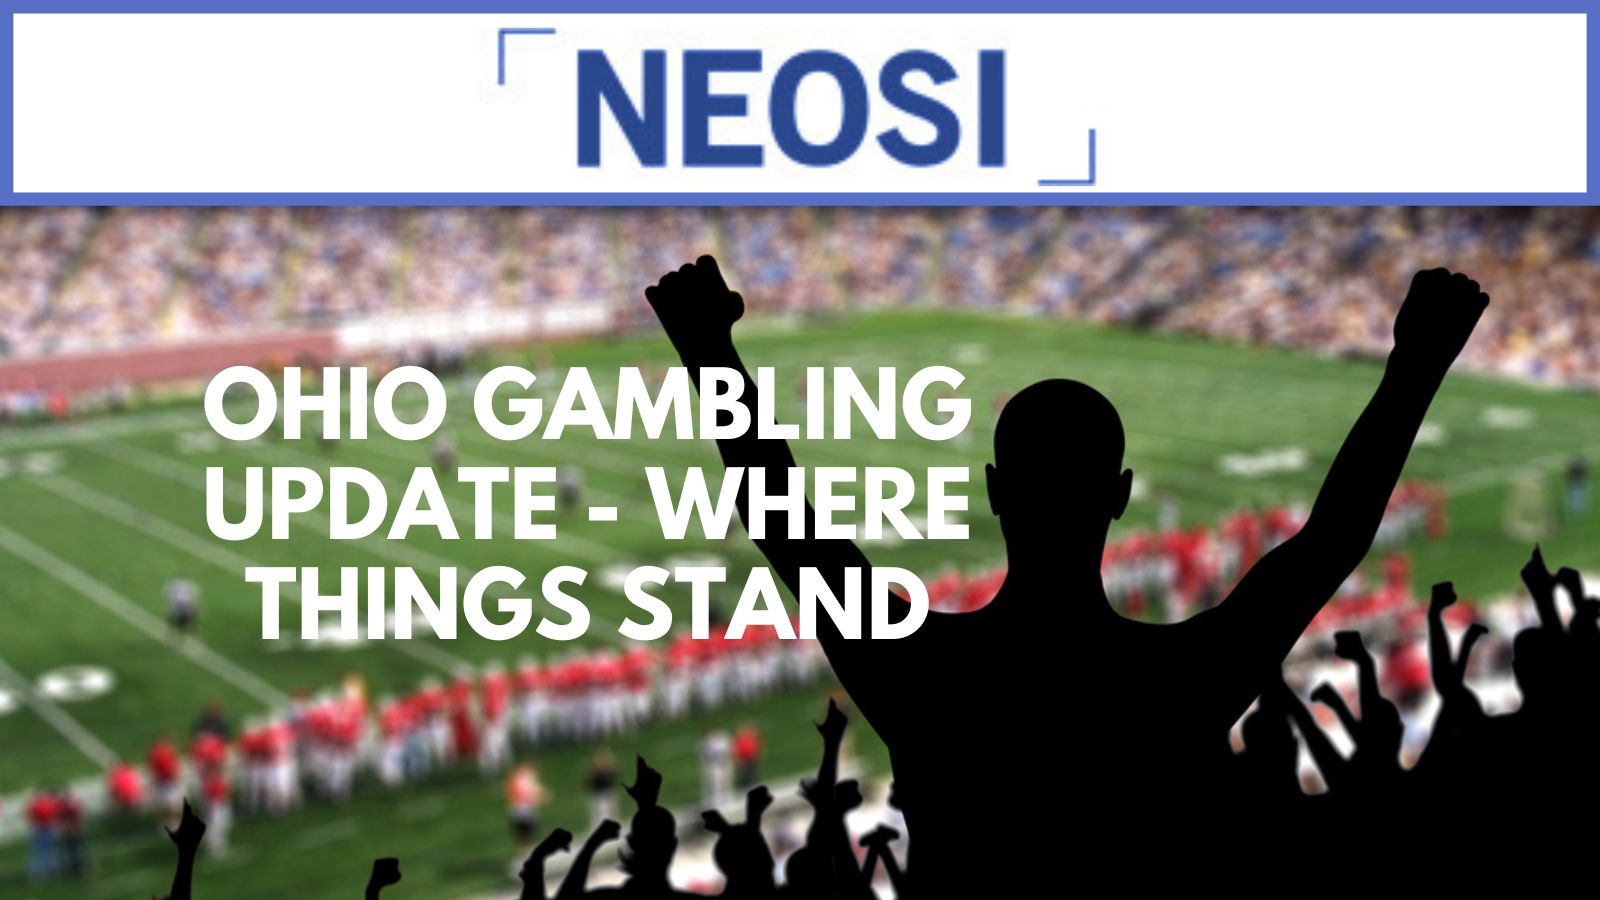 Ohio Gambling Update - Where Things Stand